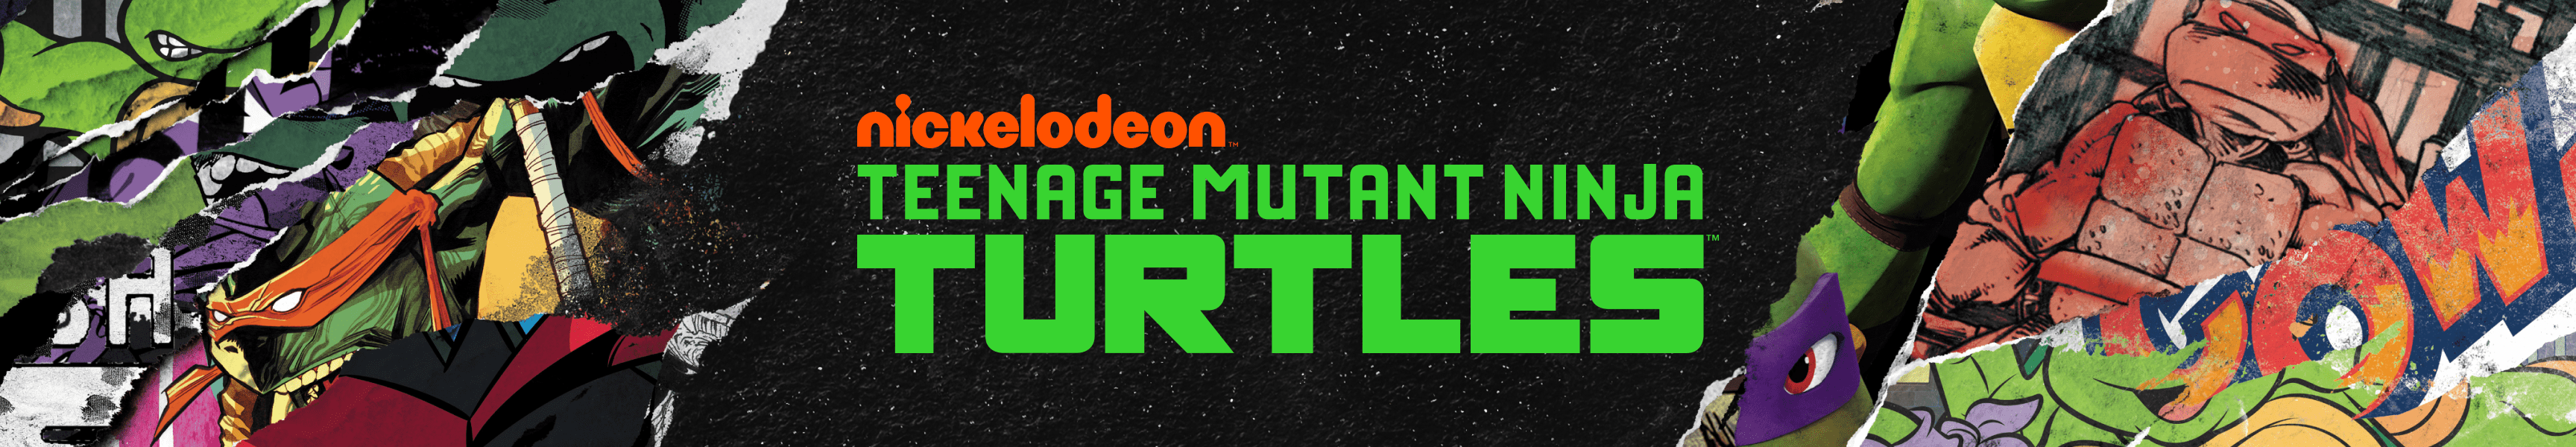 Teenage Mutant Ninja Turtles Camisetas de tirantes